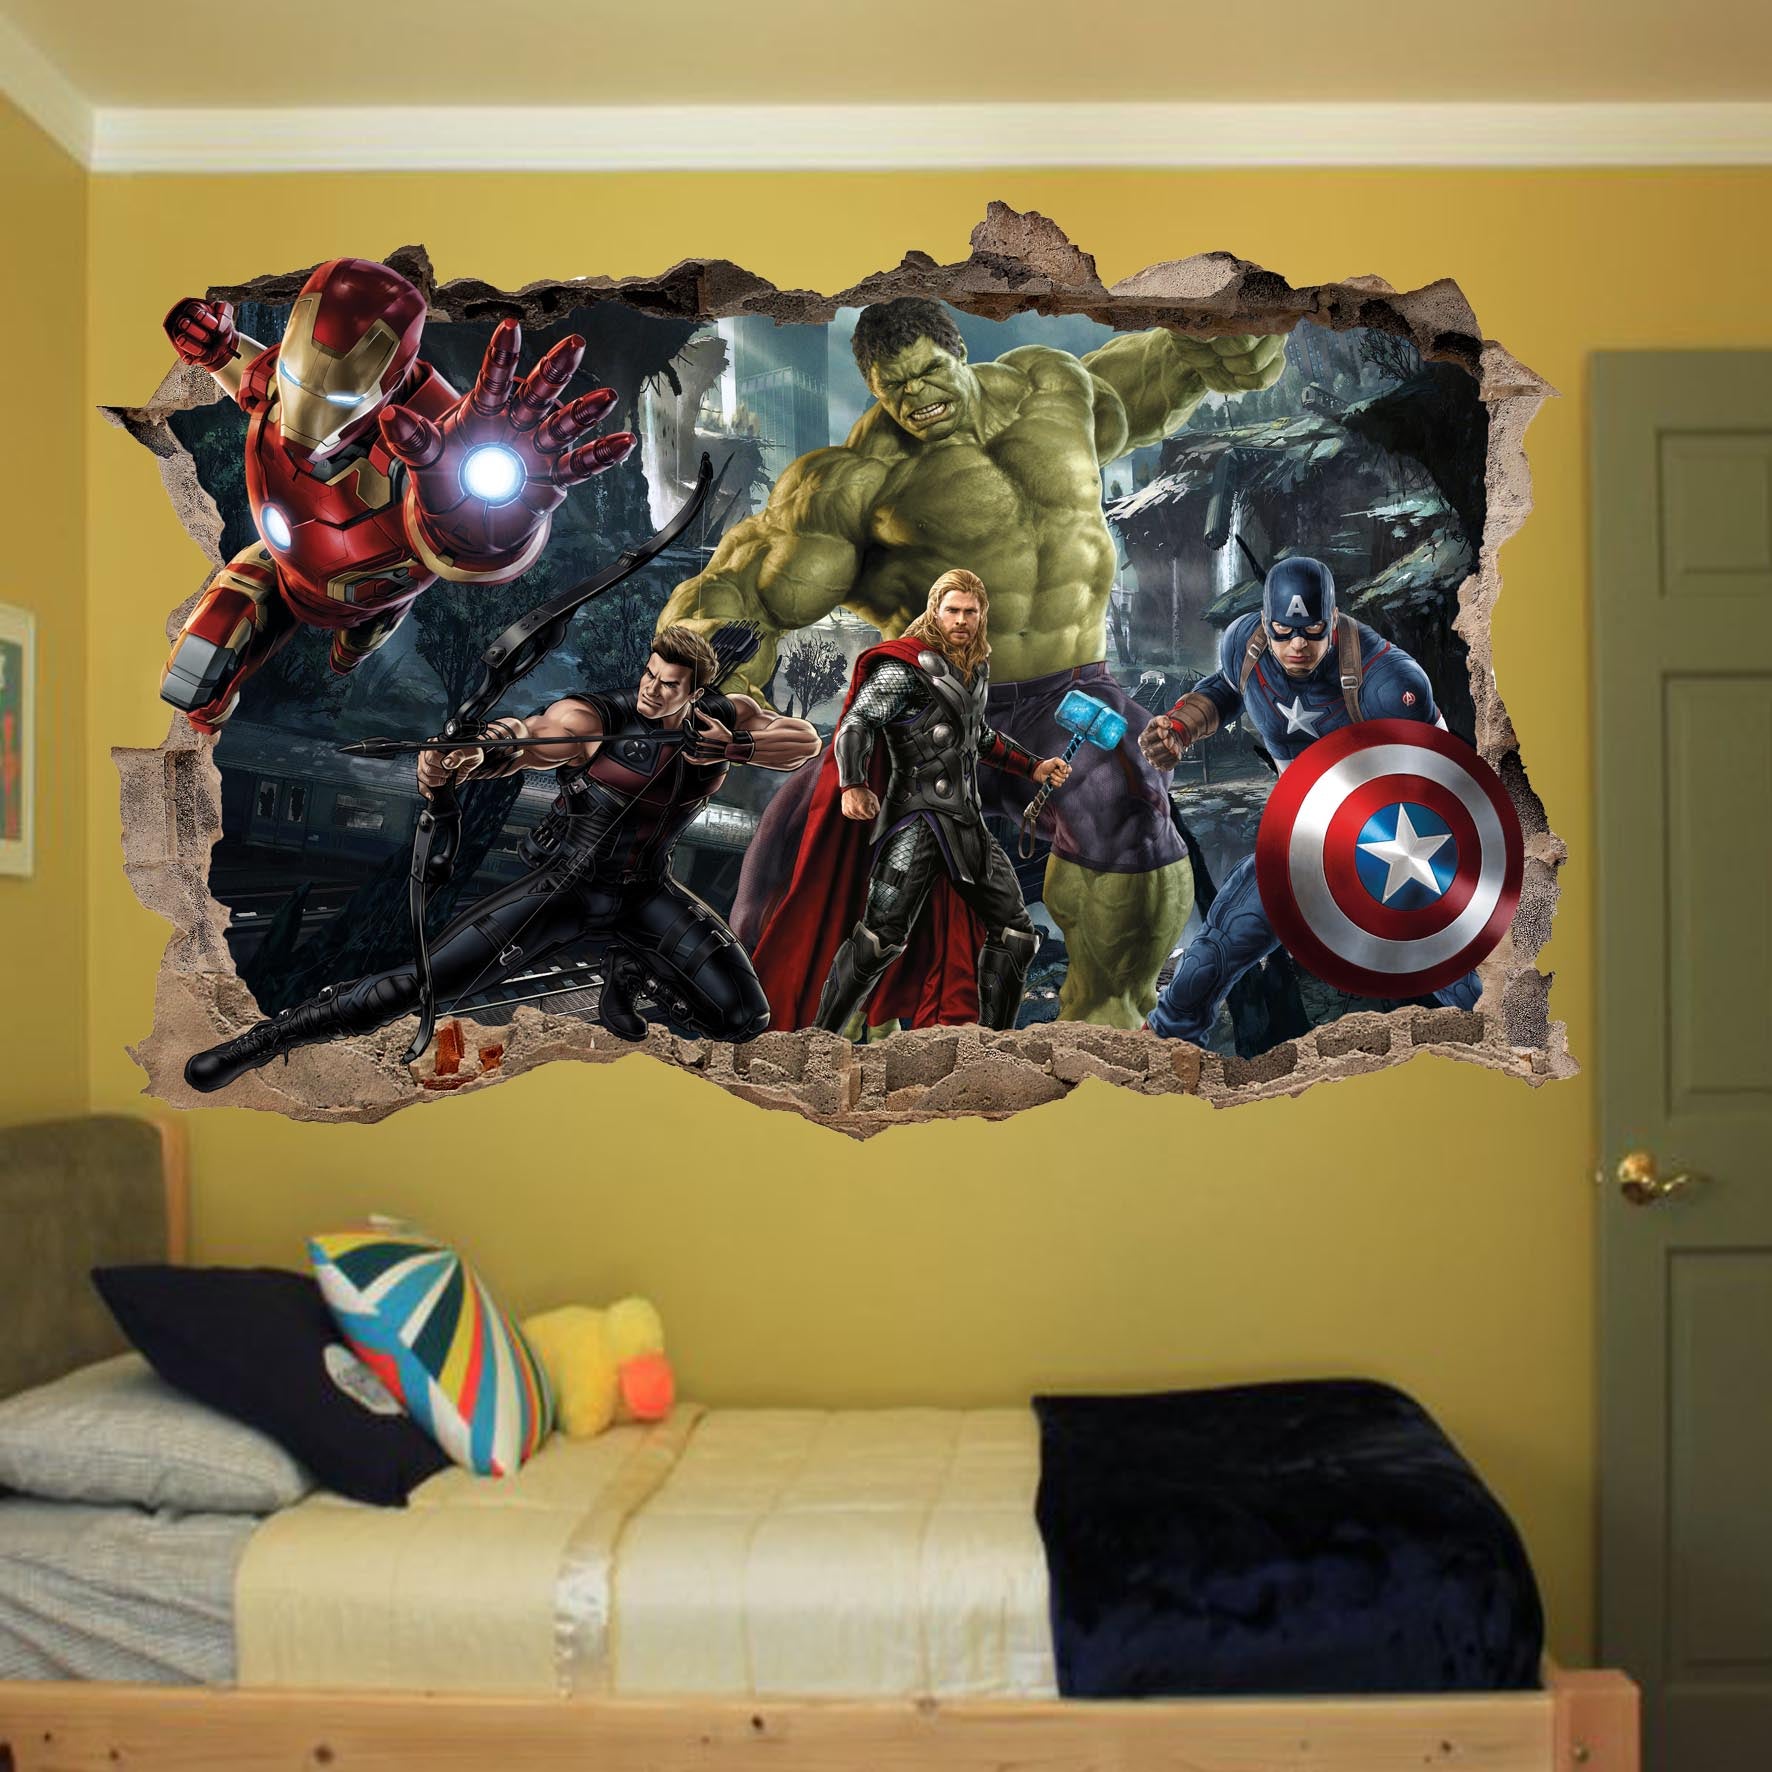 Marvel avengers hulk captain america thor poster sticker